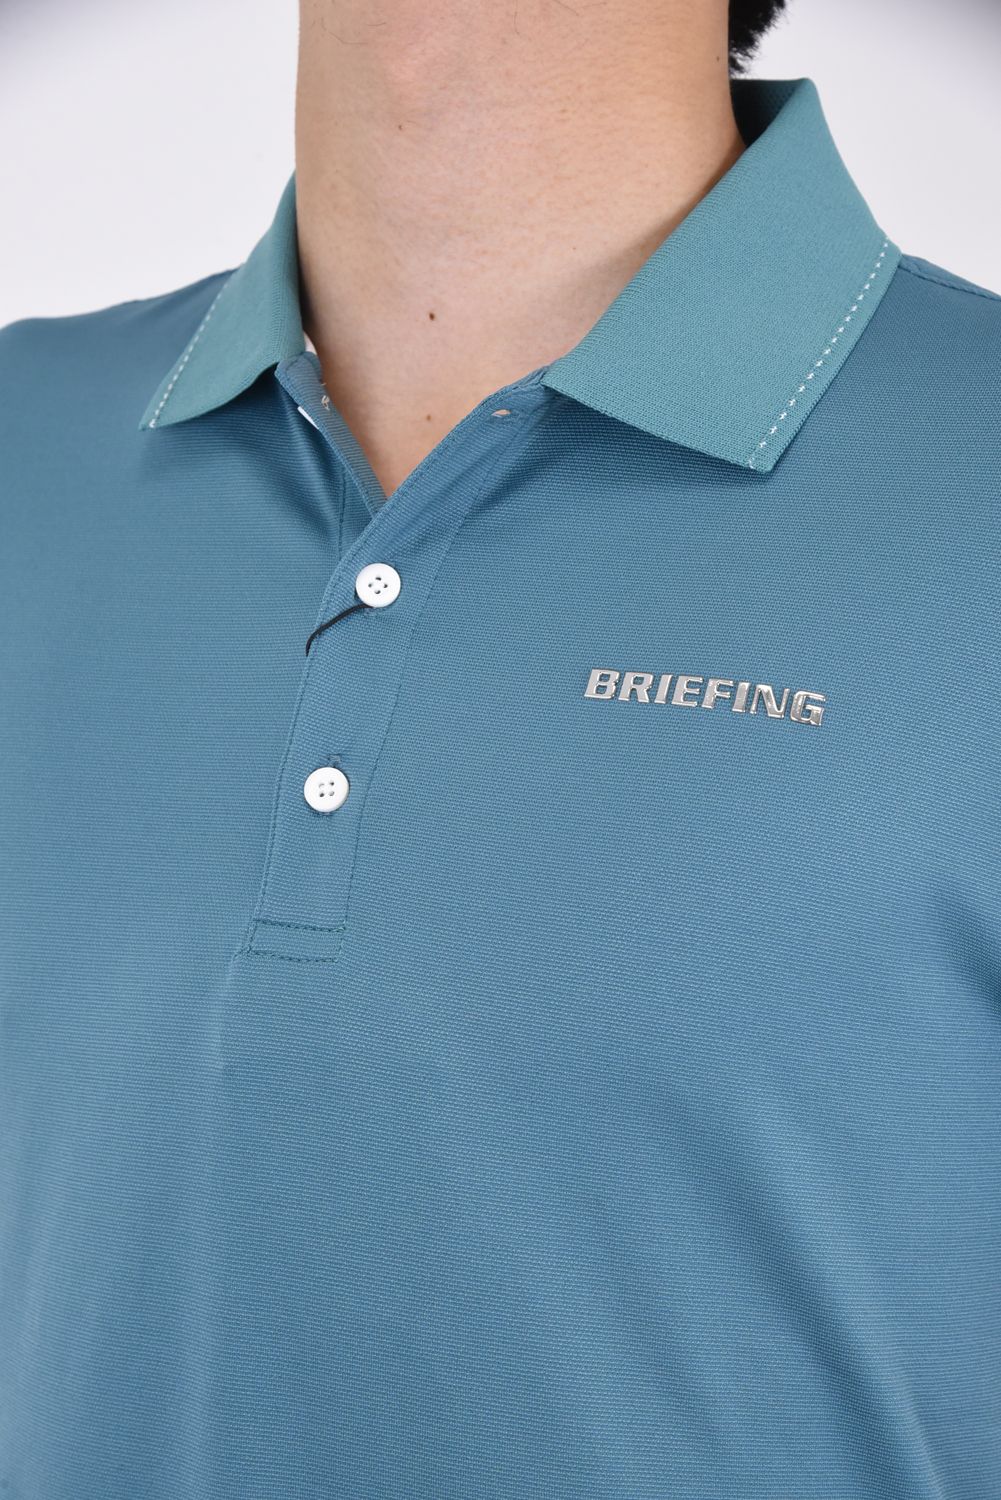 BRIEFING - MENS BASIC POLO / メタリックブランドロゴ ベーシックポロシャツ ピーコックグリーン | GOSSIP GOLF